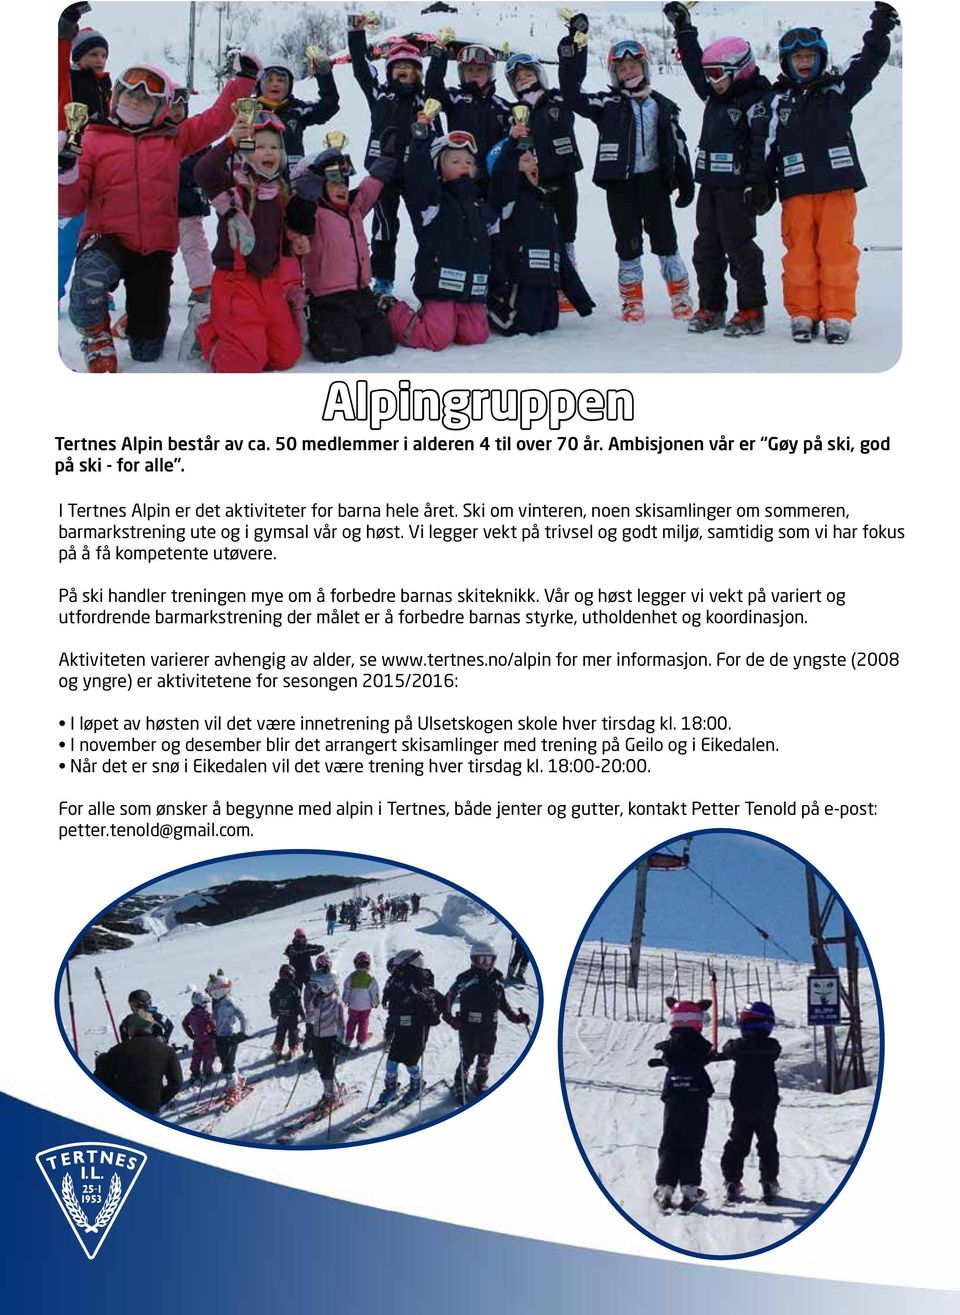 På ski handler treningen mye om å forbedre barnas skiteknikk. Vår og høst legger vi vekt på variert og utfordrende barmarkstrening der målet er å forbedre barnas styrke, utholdenhet og koordinasjon.